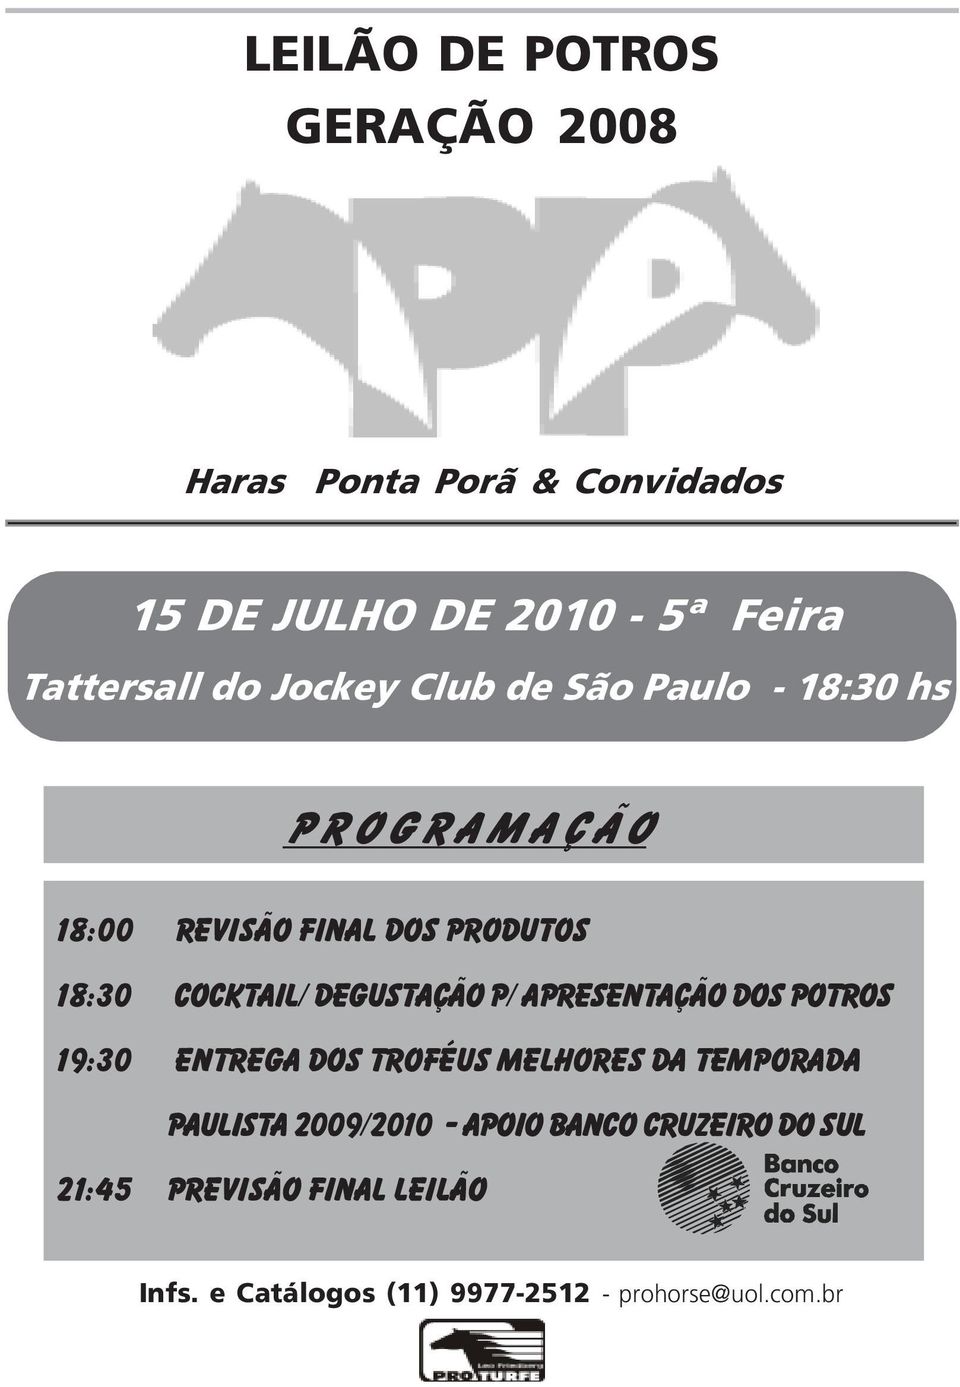 Degustação p/ Apresentação dos potros 19:30 Entrega dos Troféus Melhores da Temporada paulista 2009/2010 -